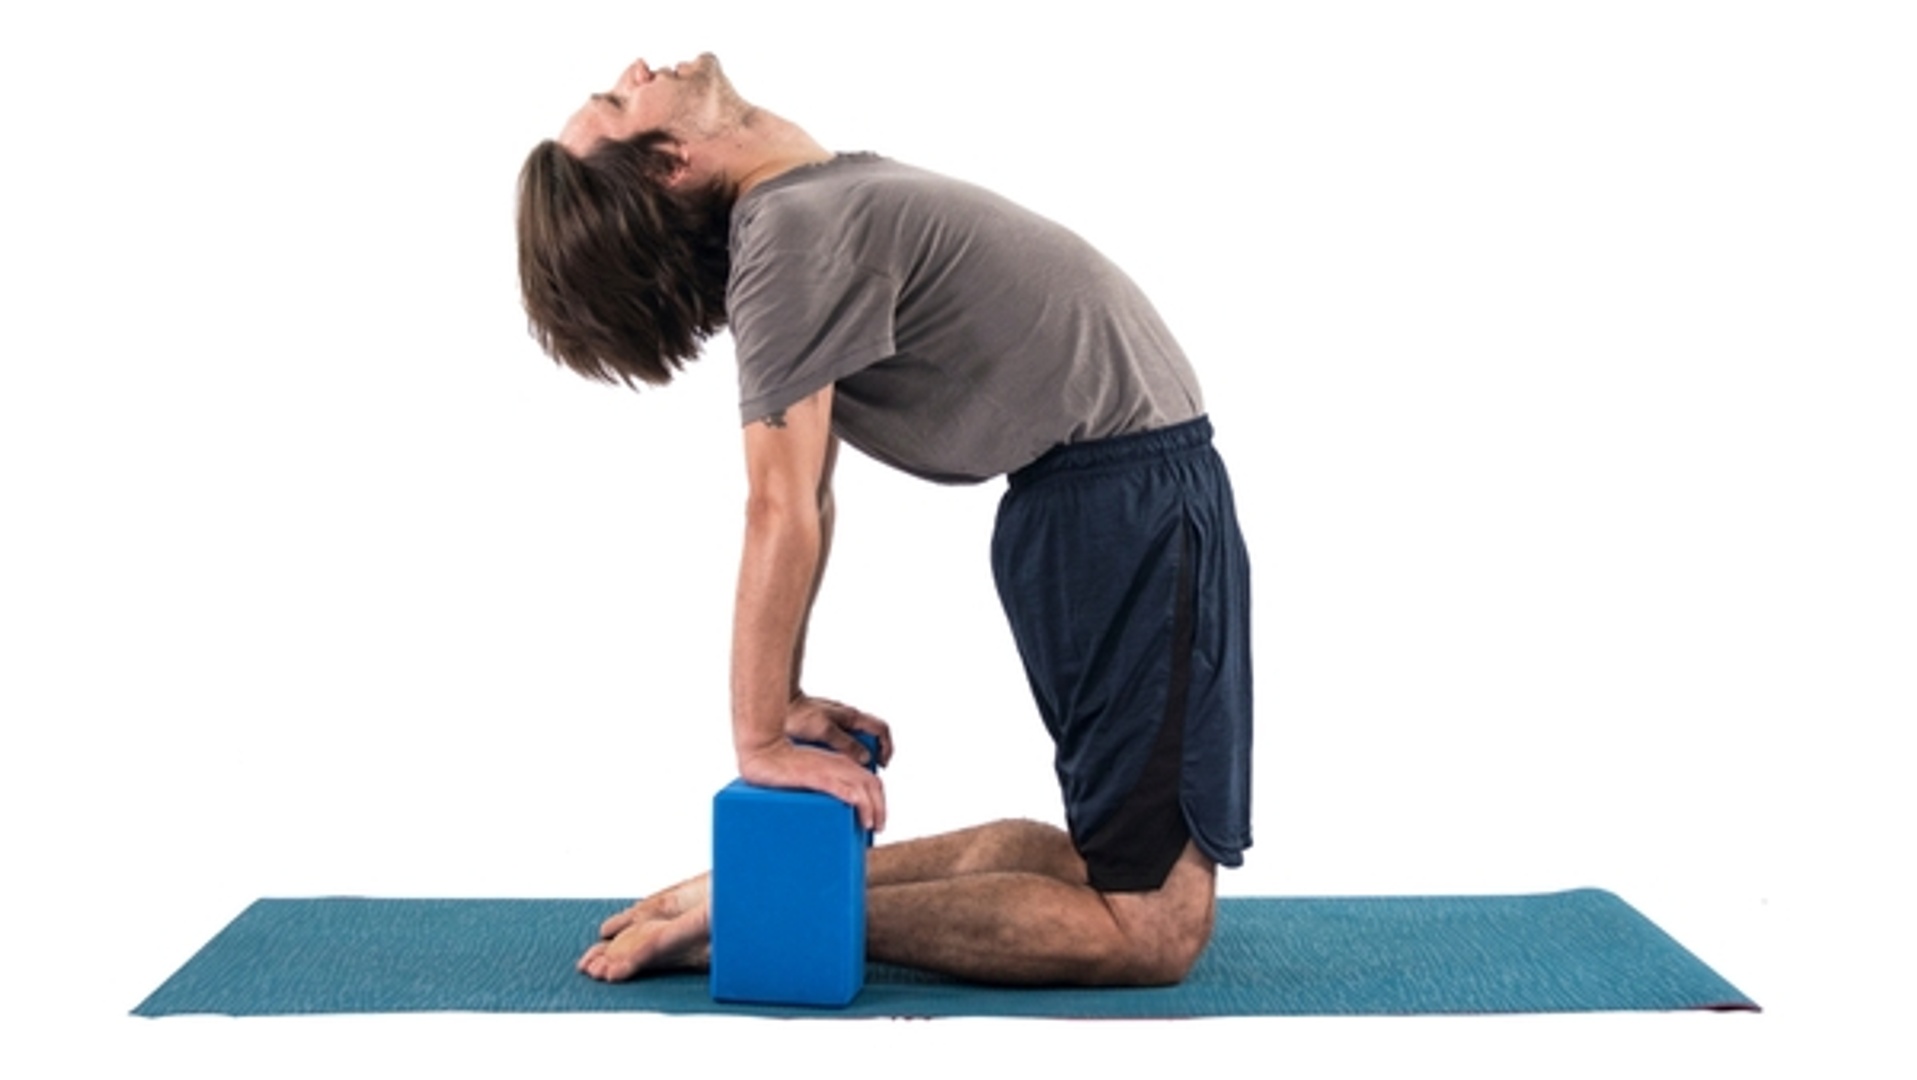 Use yoga blocks while leaning back